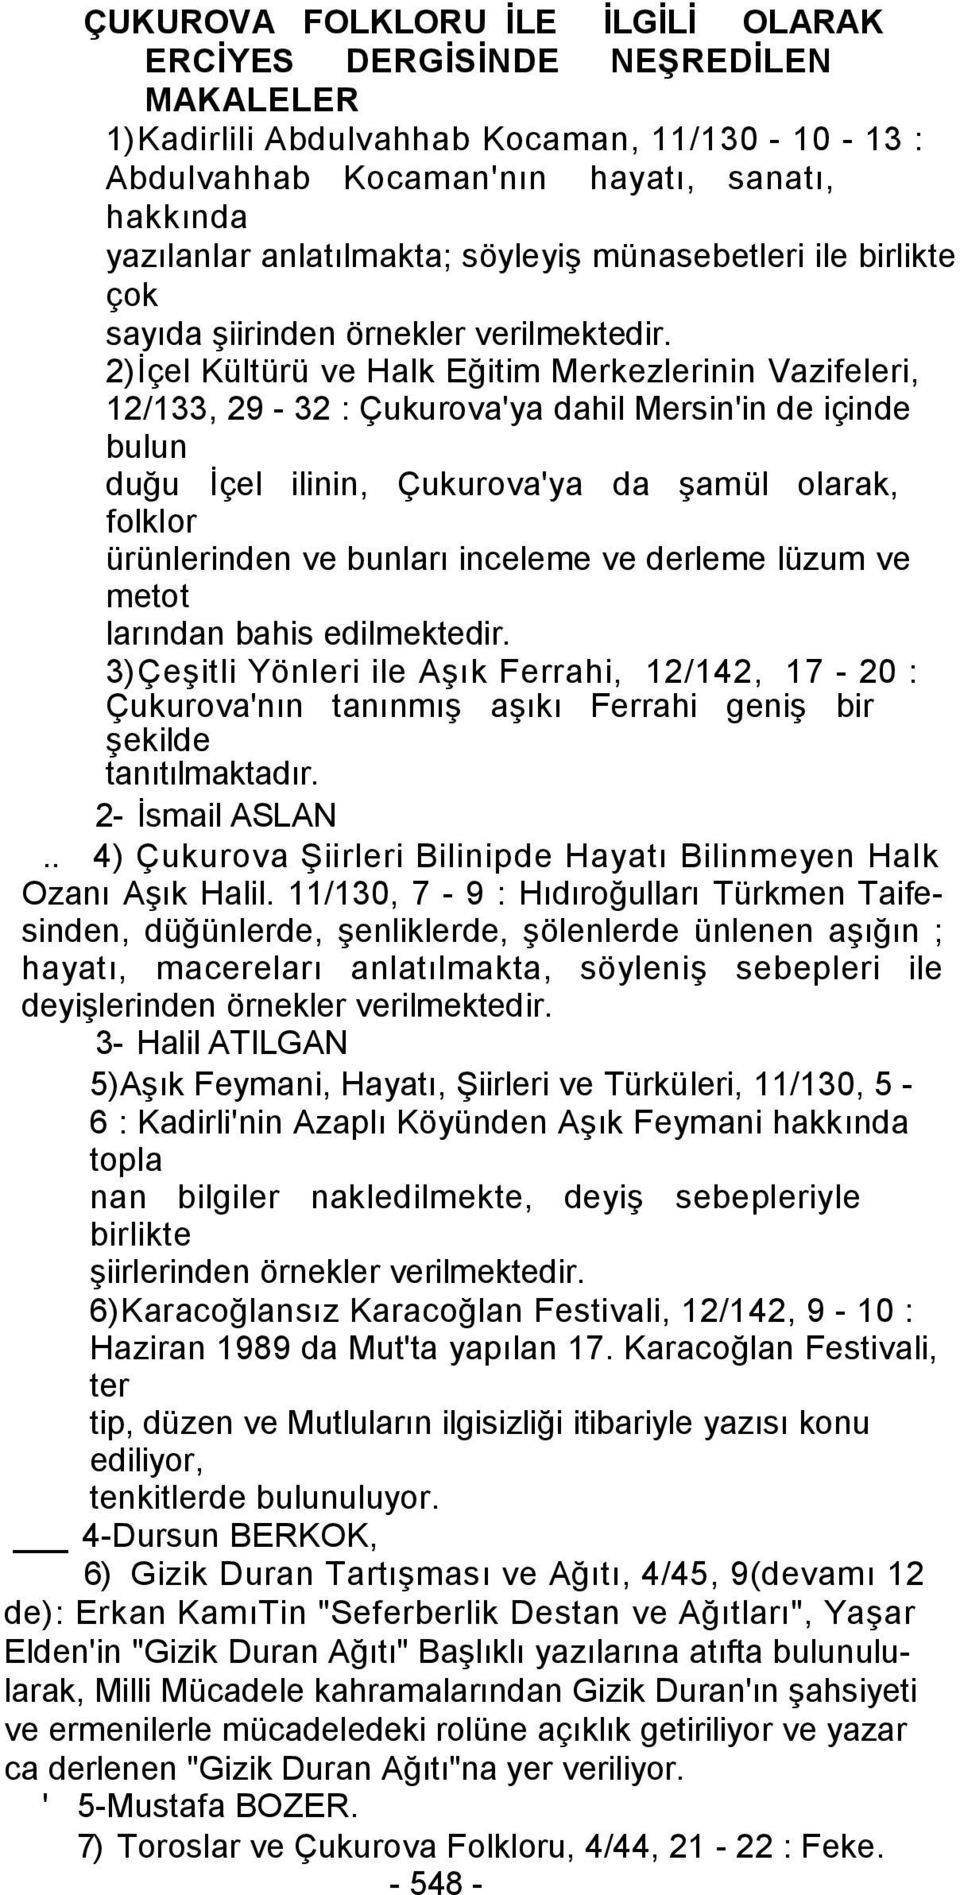 2)İçel Kültürü ve Halk Eğitim Merkezlerinin Vazifeleri, 12/133, 29-32 : Çukurova'ya dahil Mersin'in de içinde bulun duğu İçel ilinin, Çukurova'ya da şamül olarak, folklor ürünlerinden ve bunları